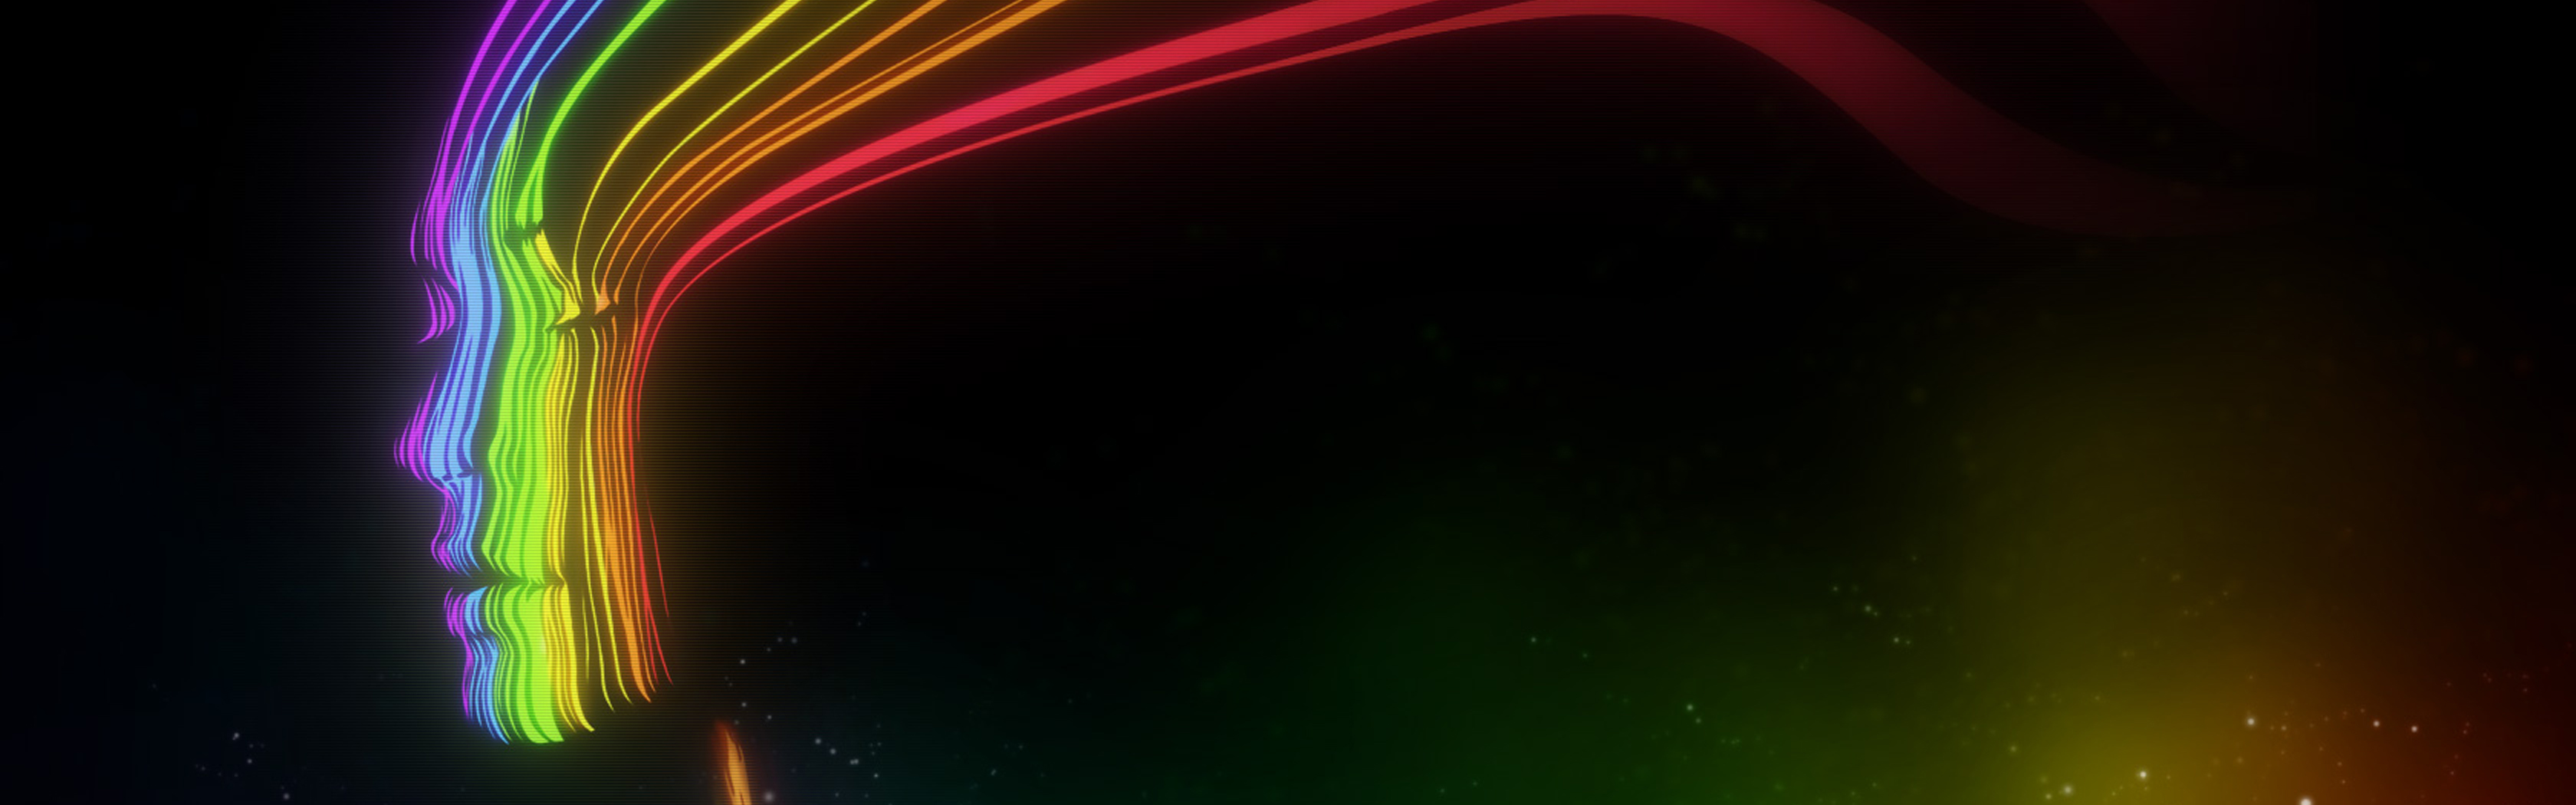 sfondo di doppio monitor 1080p,verde,rosso,nero,leggero,giallo